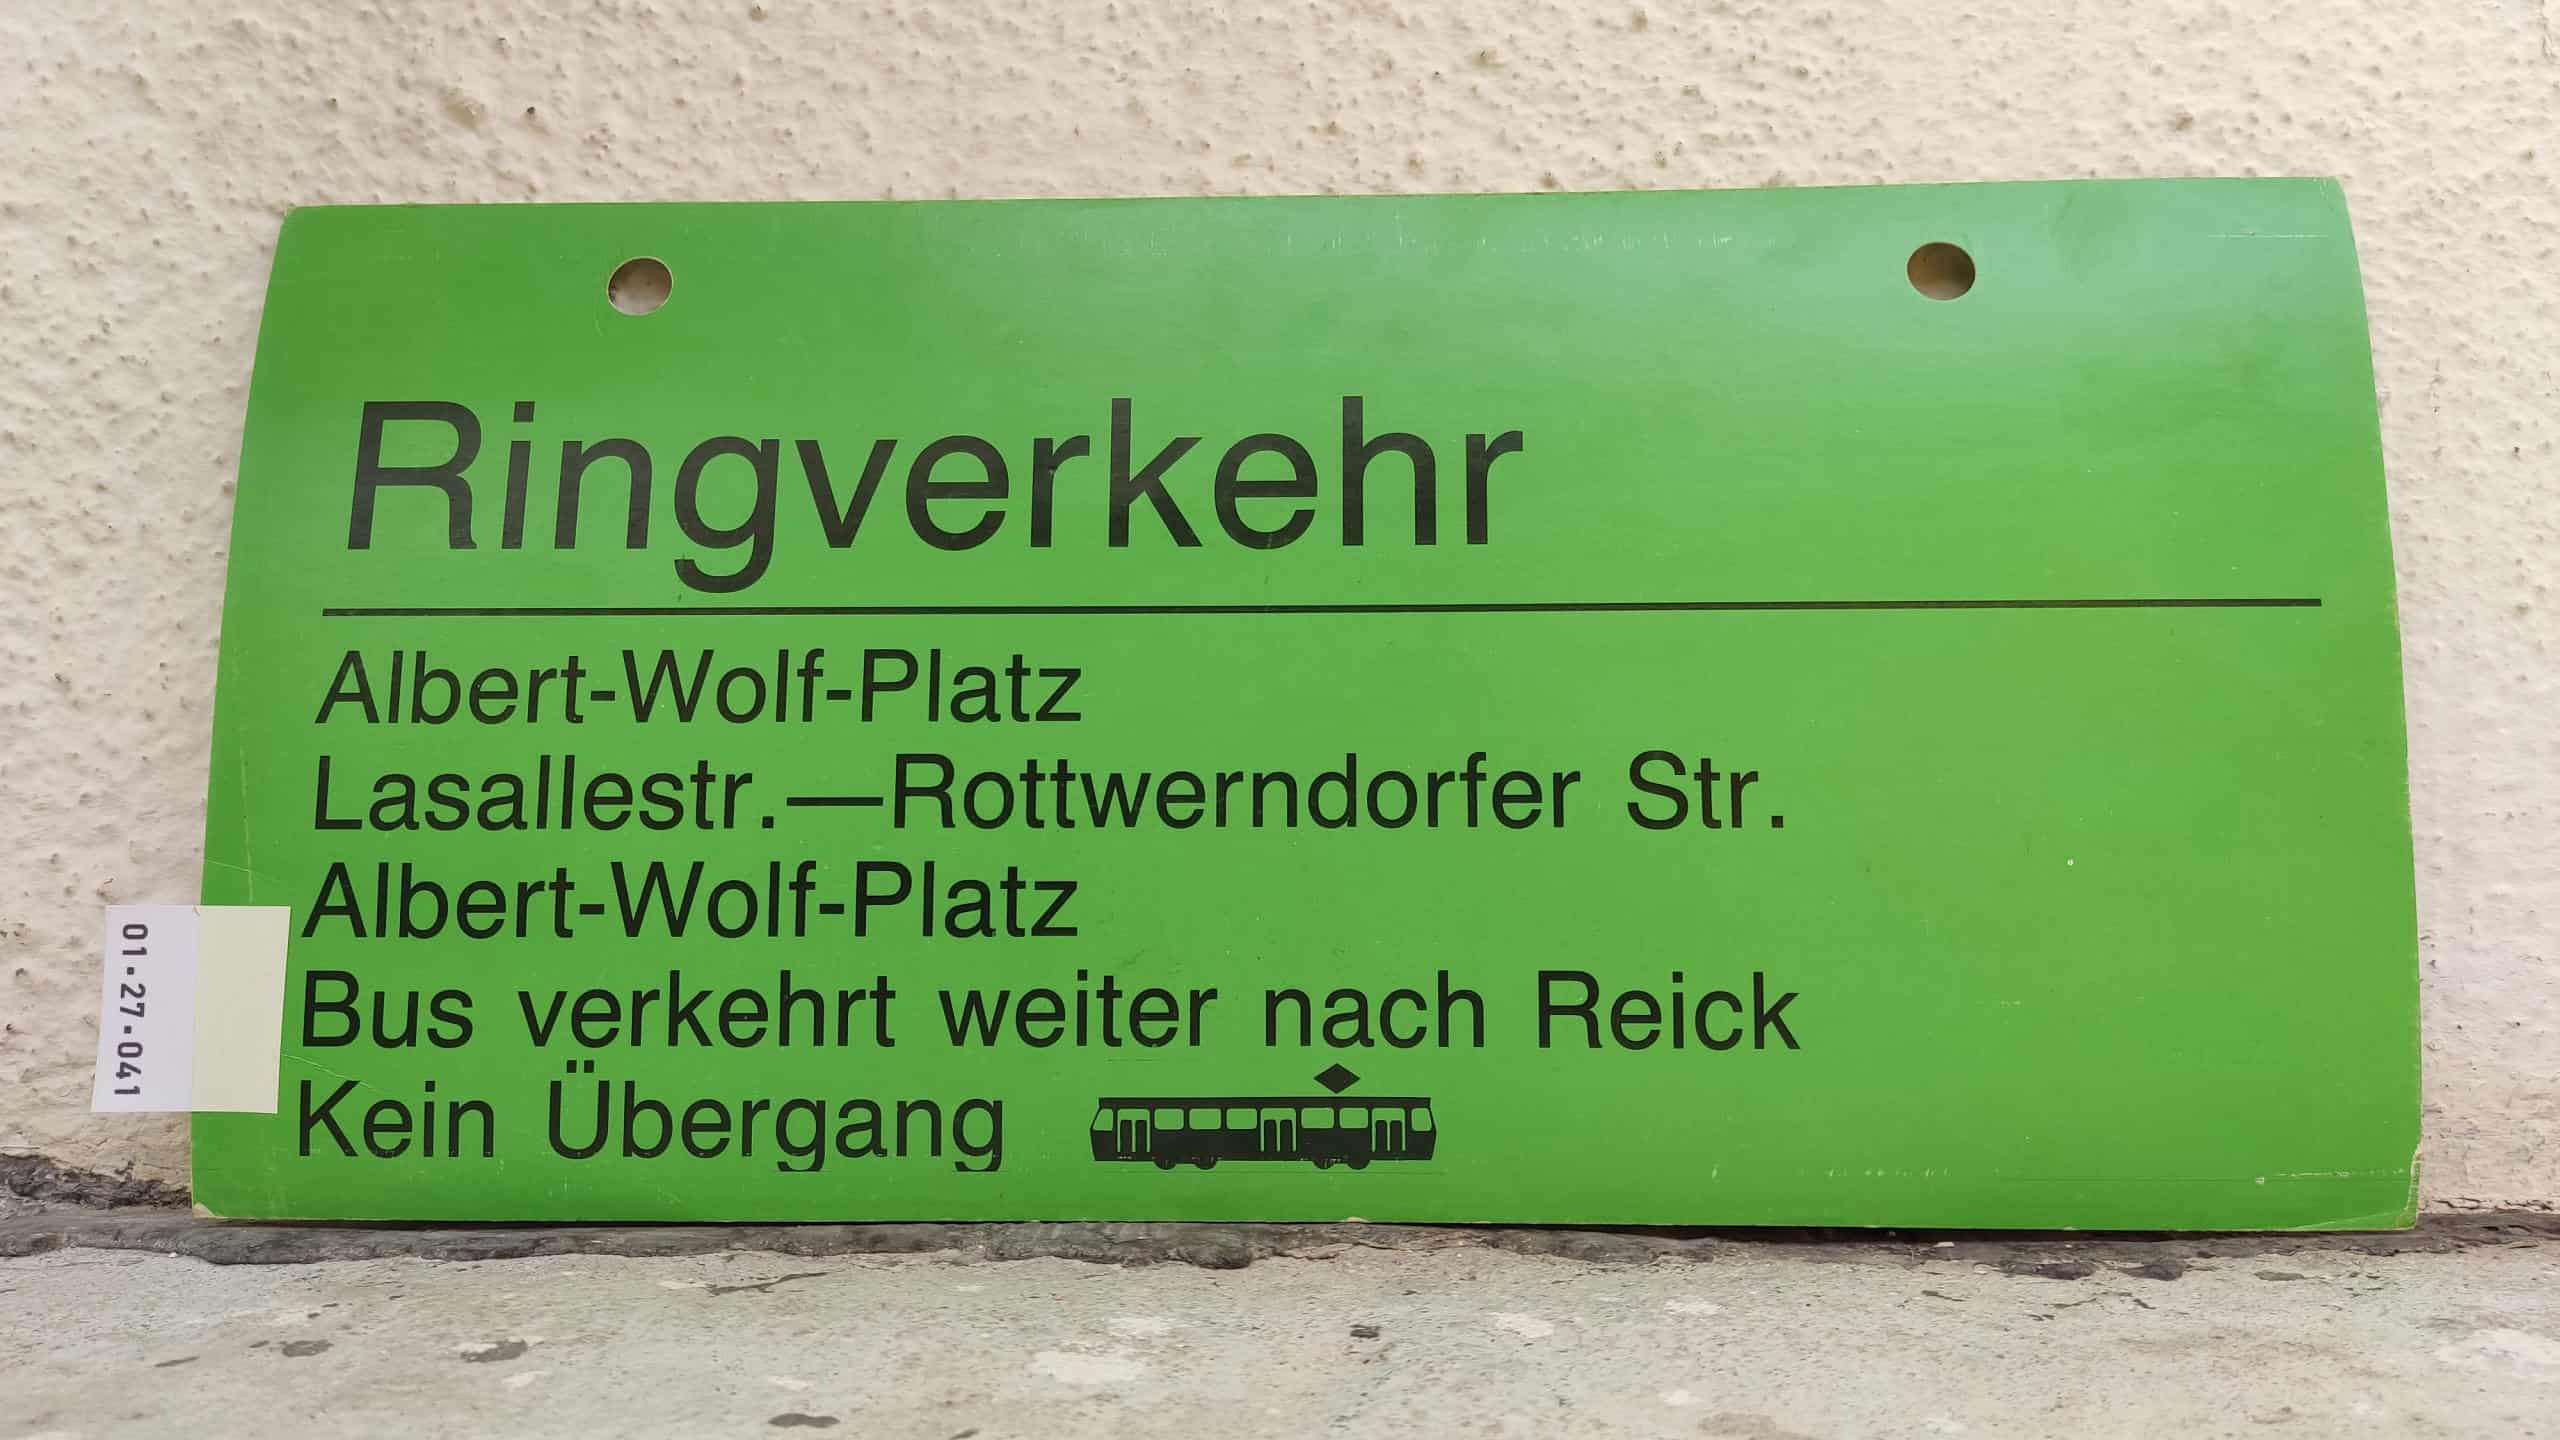 Ringverkehr Albert-Wolf-Platz – Albert-Wolf-Platz Bus verkehrt weiter nach Reick Kein Übergang [Tram neu]